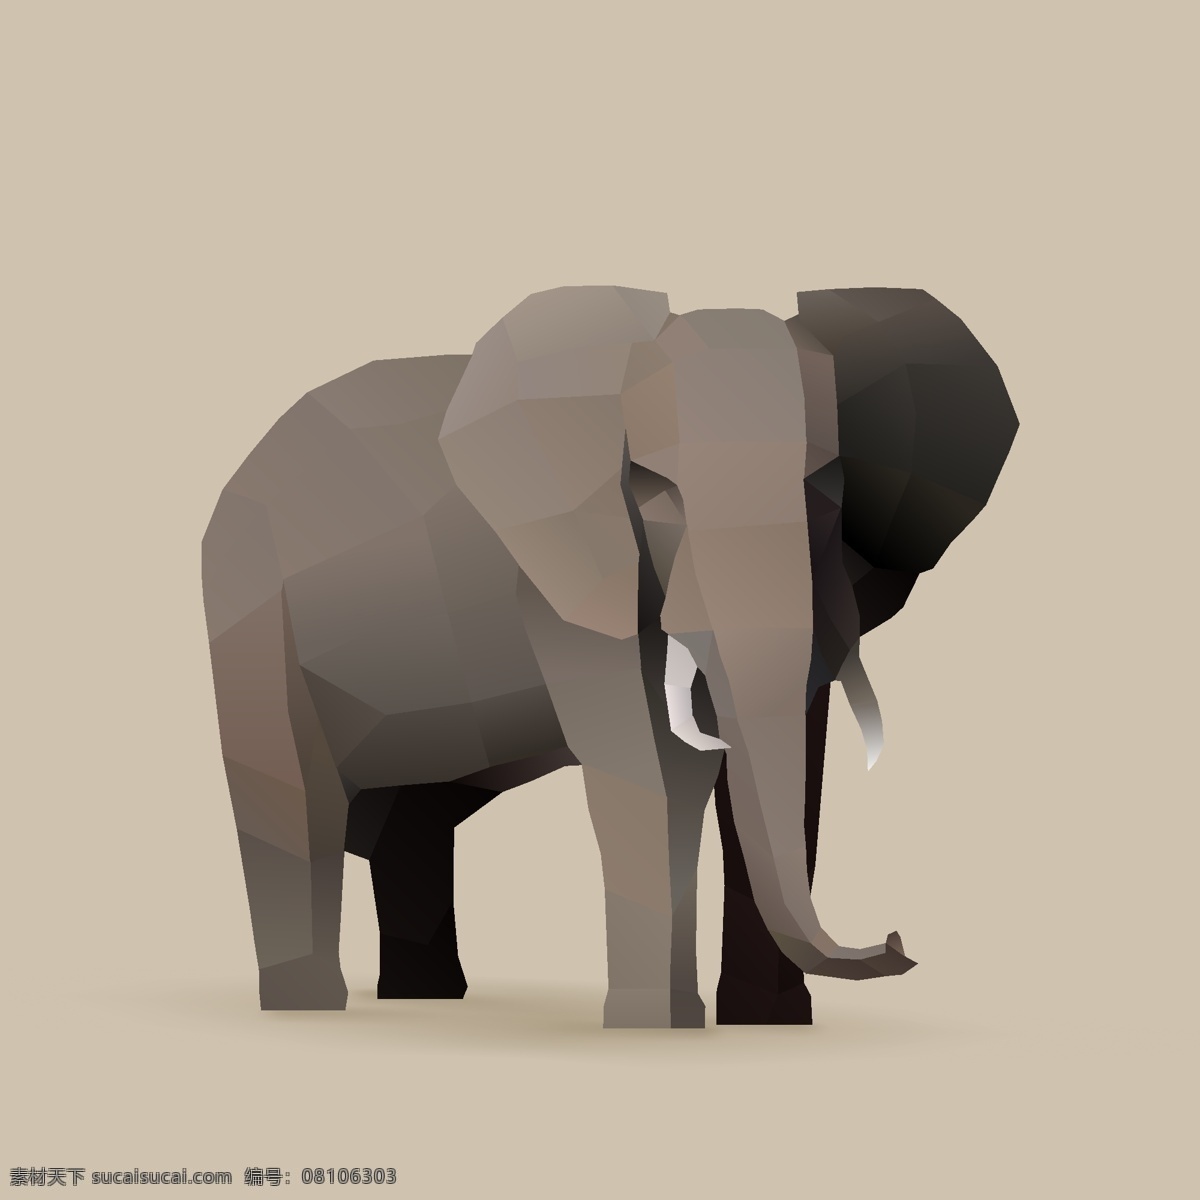 大象图片 大鼻子 象 大象 矢量鹿 工笔画 工笔画大象 插画 插画大象 原画 装饰画 背景墙 元素 动物 生物 生物世界 野生动物